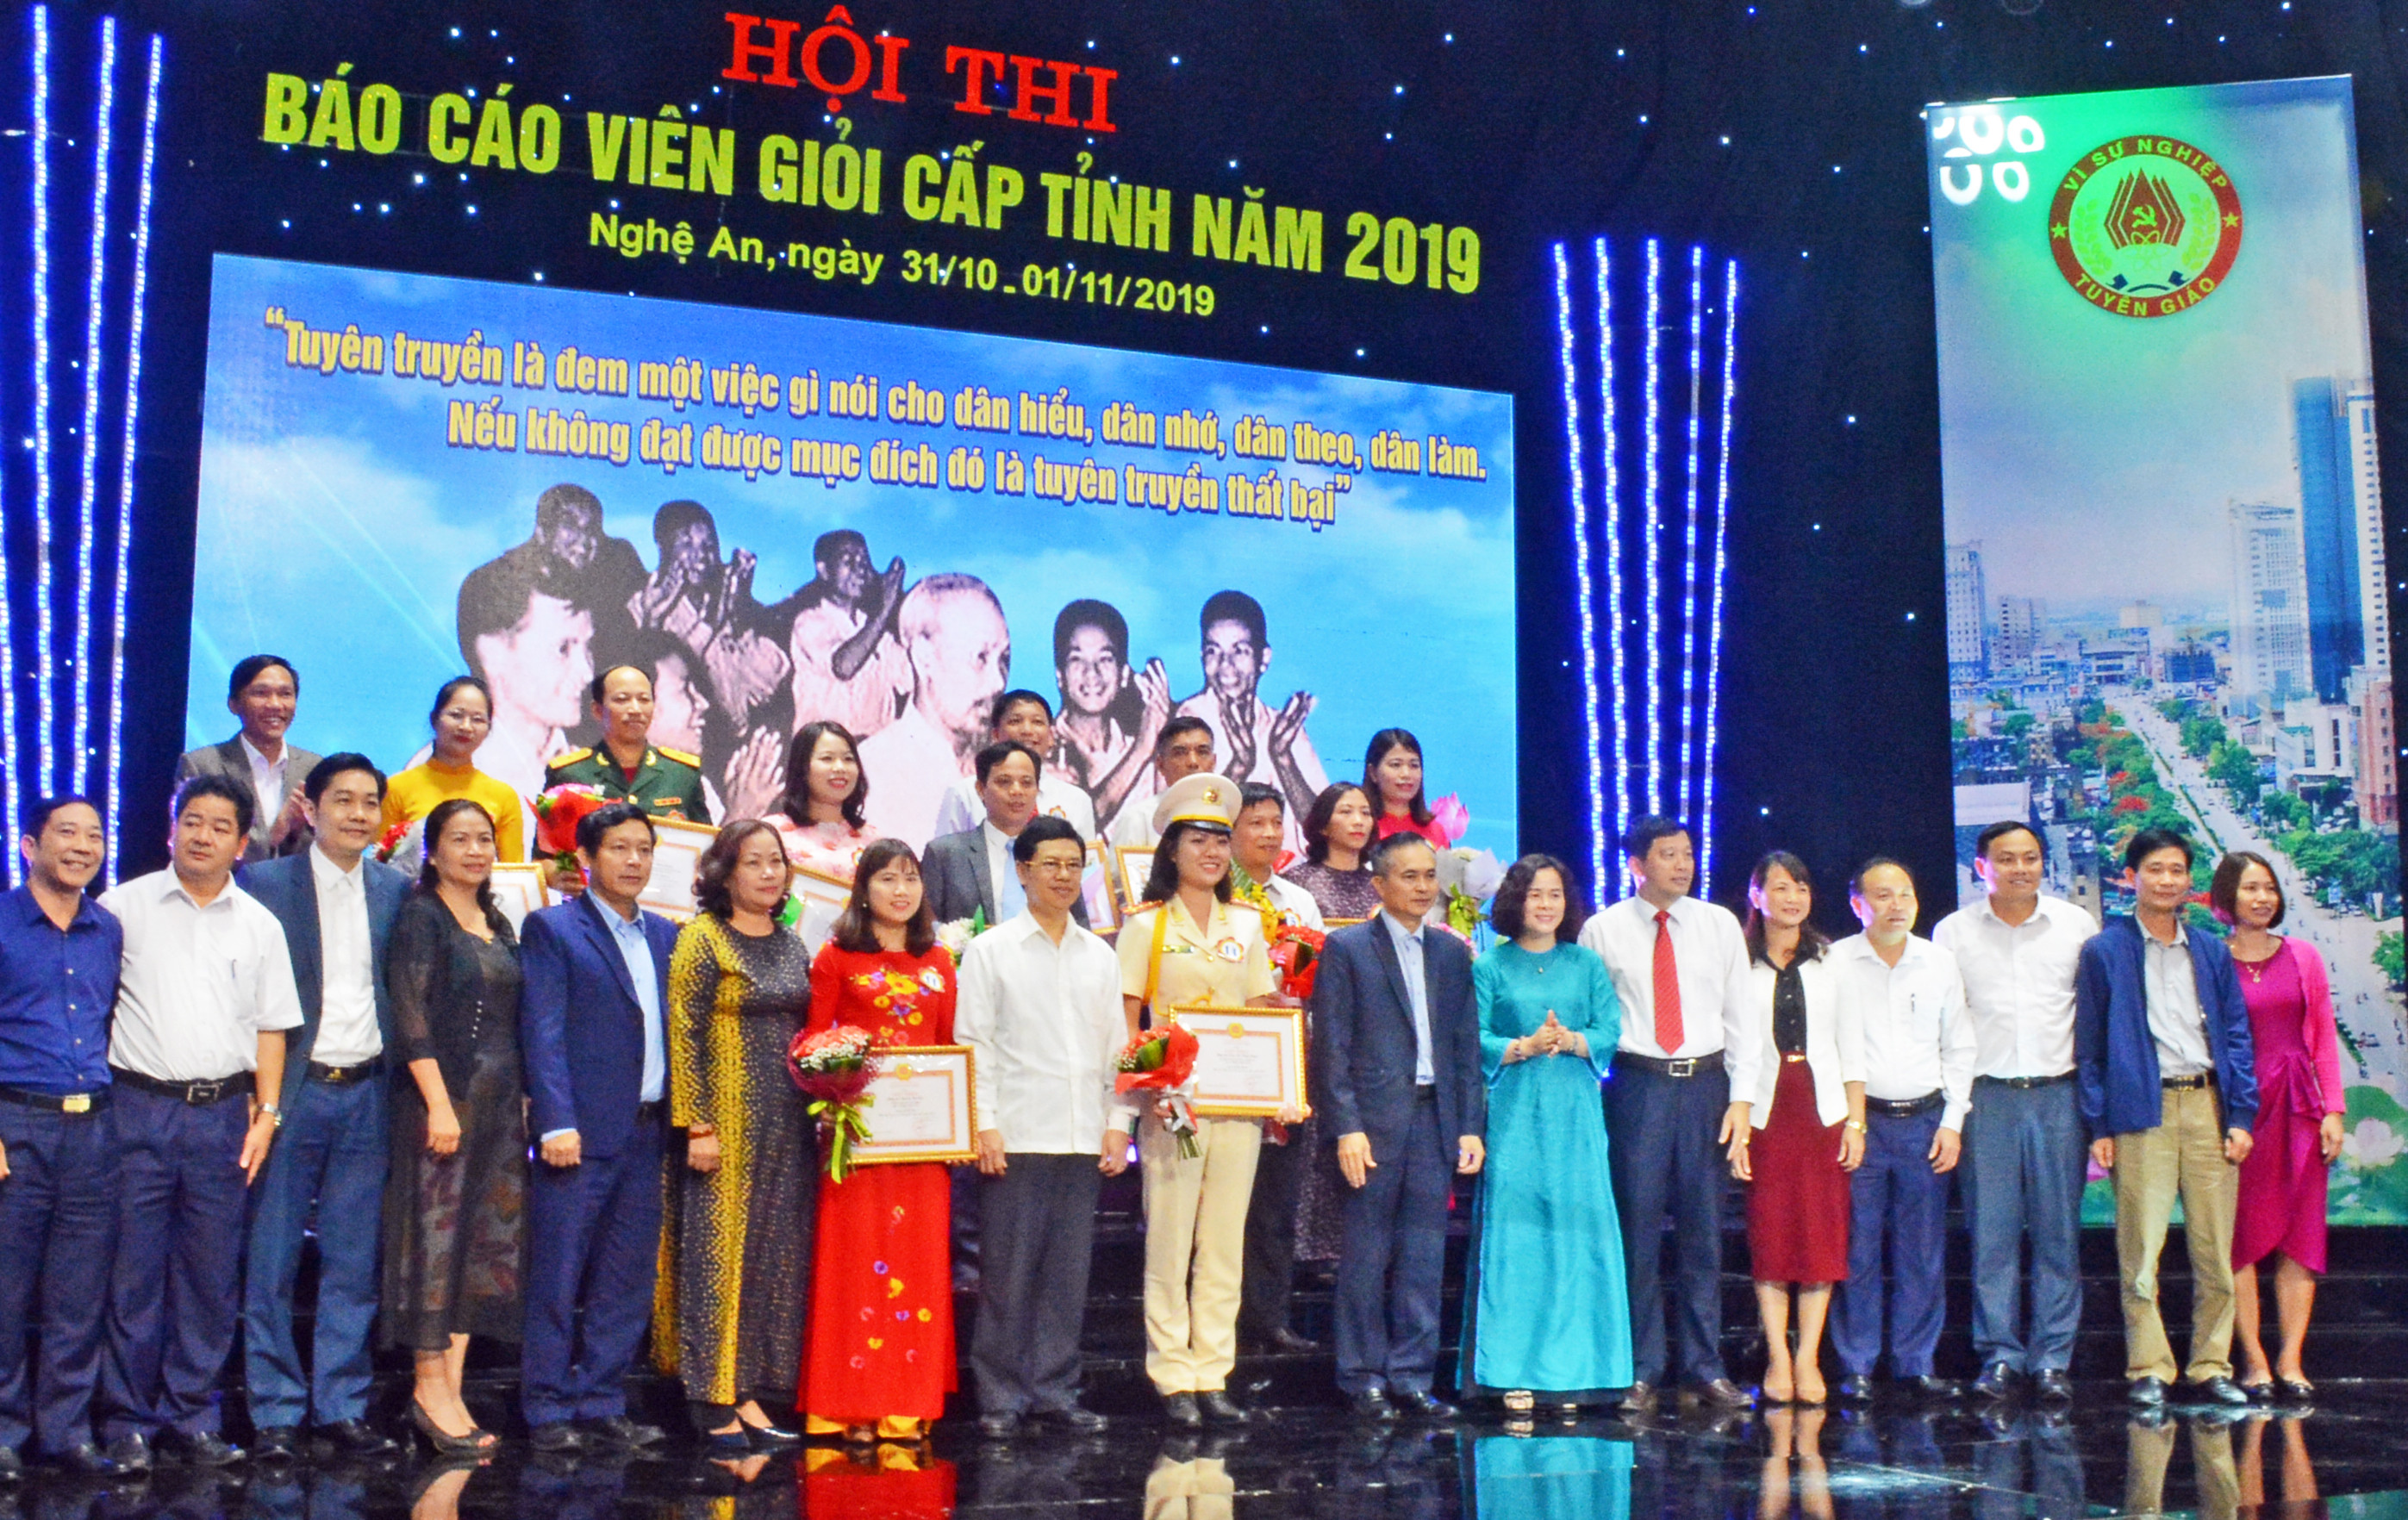 Các đồng chí lãnh đạo tỉnh chúc mừng báo cáo viên giỏi tại Hội thi báo cáo viên giỏi cấp tỉnh năm 2019. Ảnh: Thu Giang